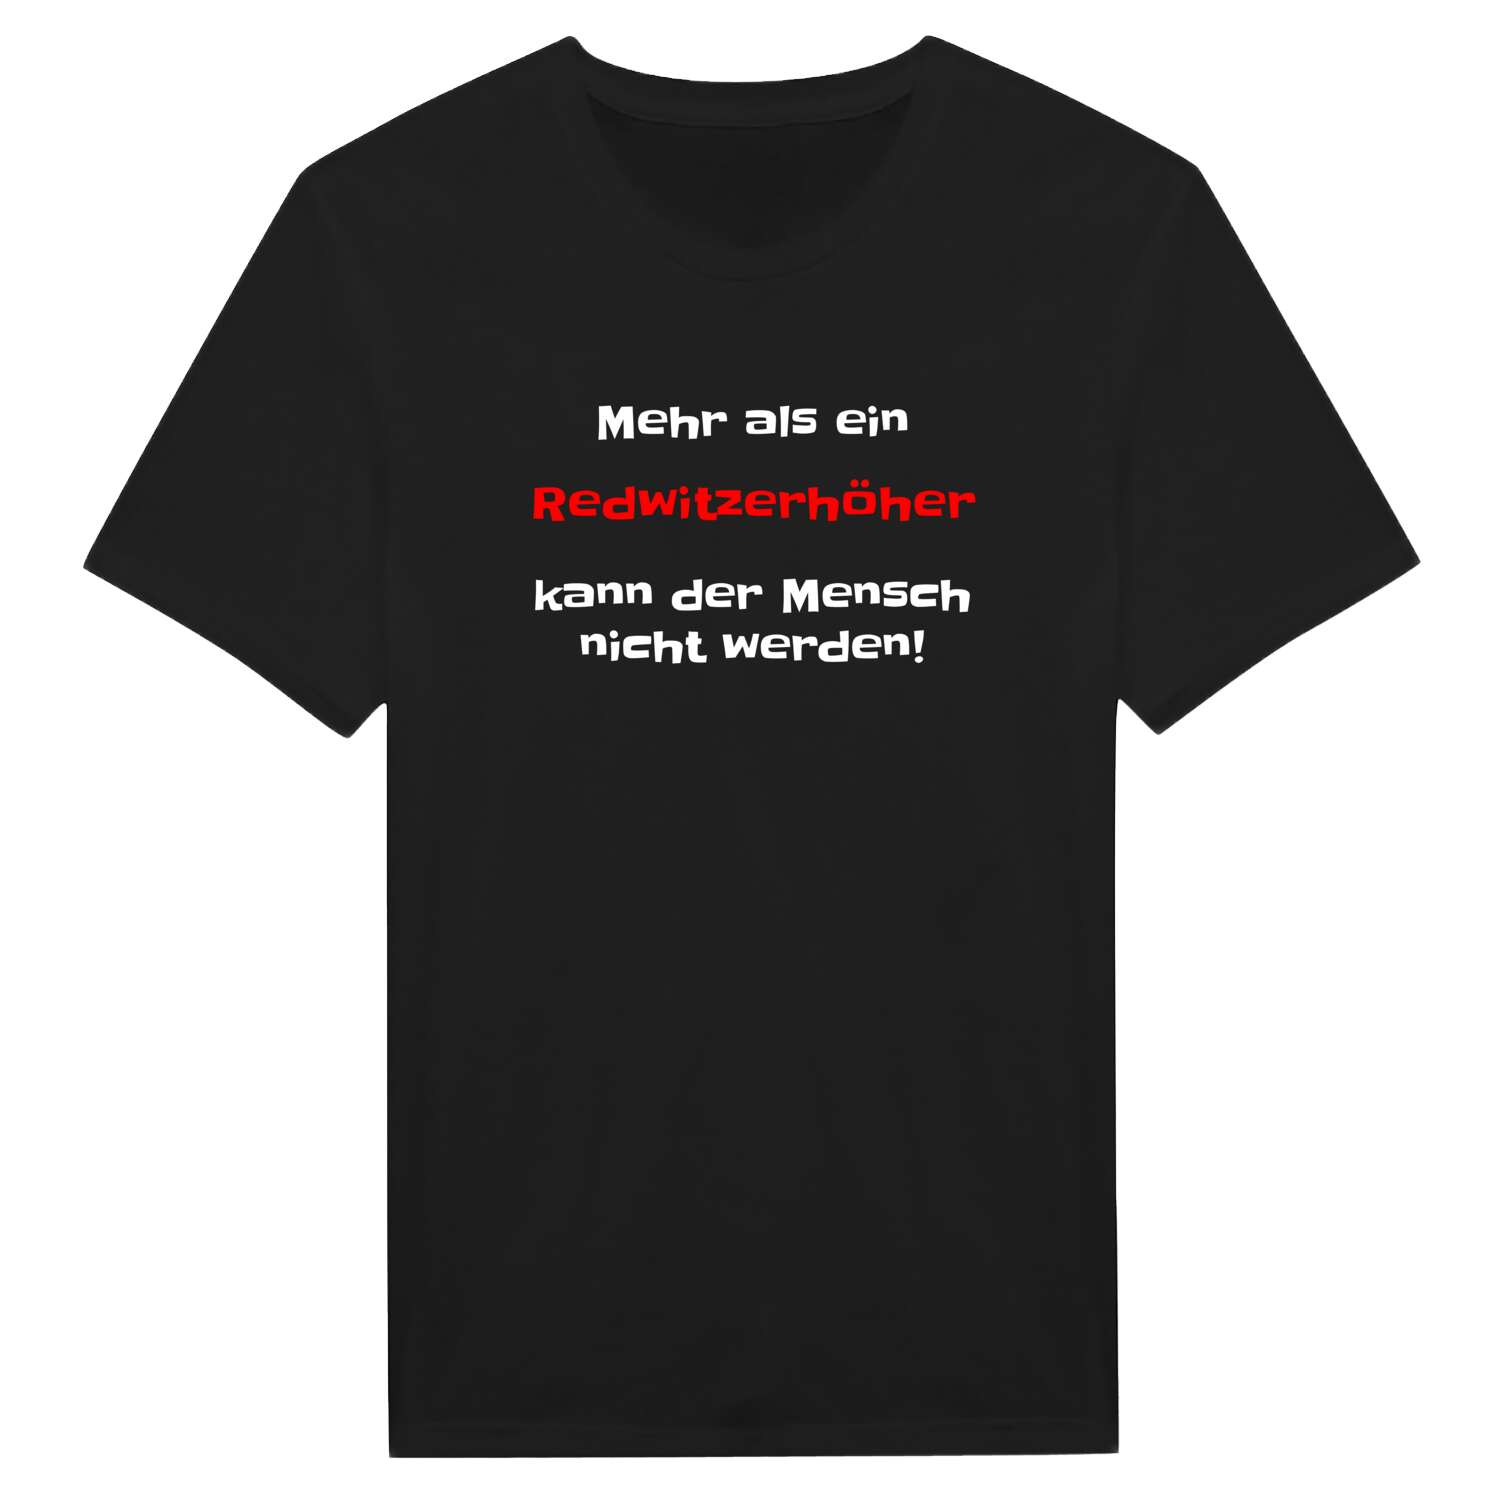 Redwitzerhöh T-Shirt »Mehr als ein«